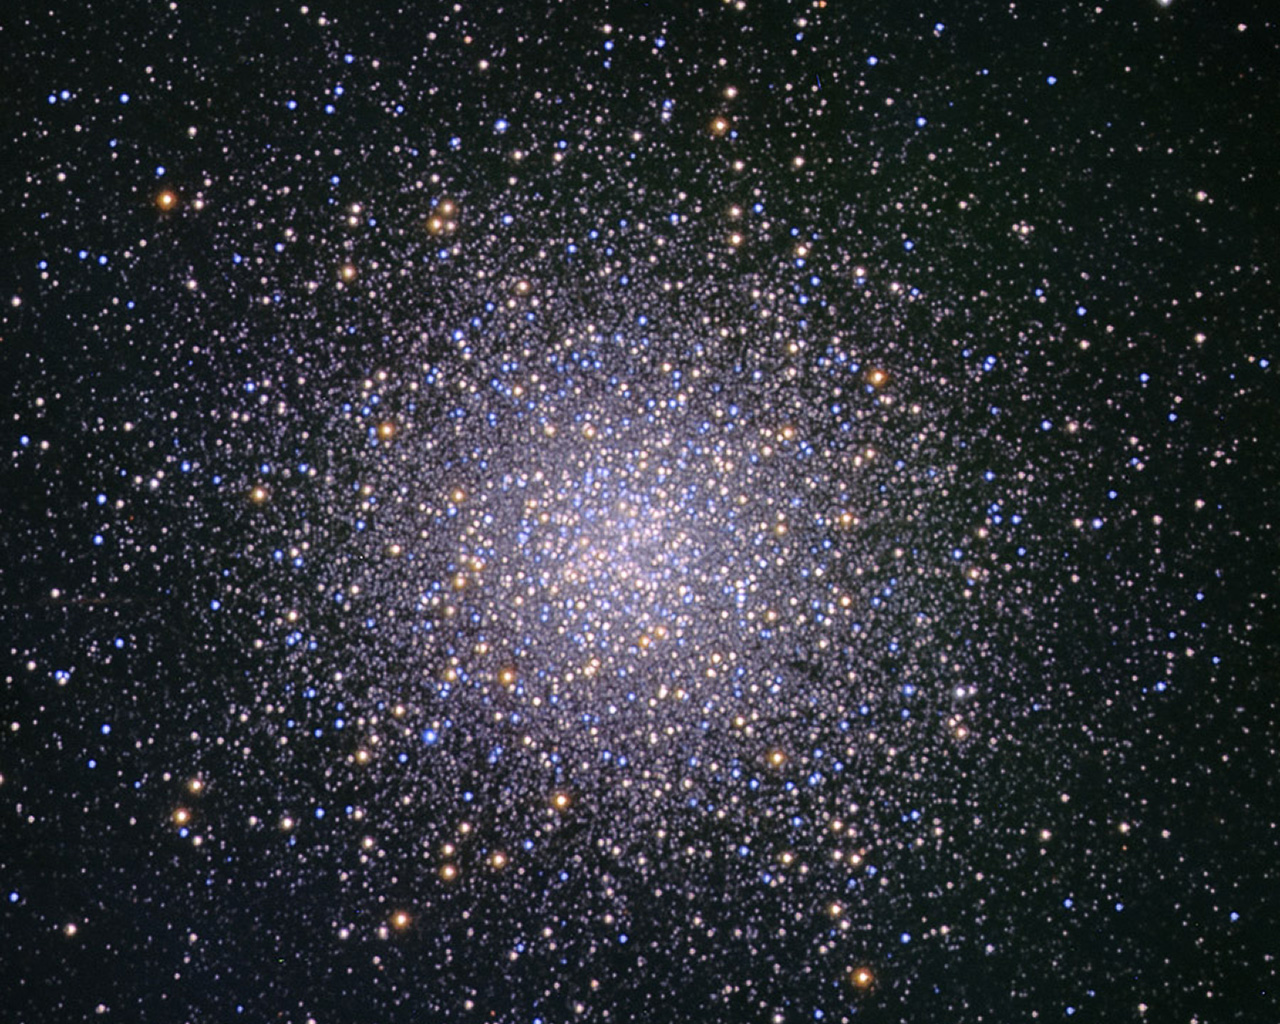 Cúmulo globular M13 en la constelación de Hércules. Créditos: Daniel López, Telescopio IAC80 (Observatorio del Teide-IAC)